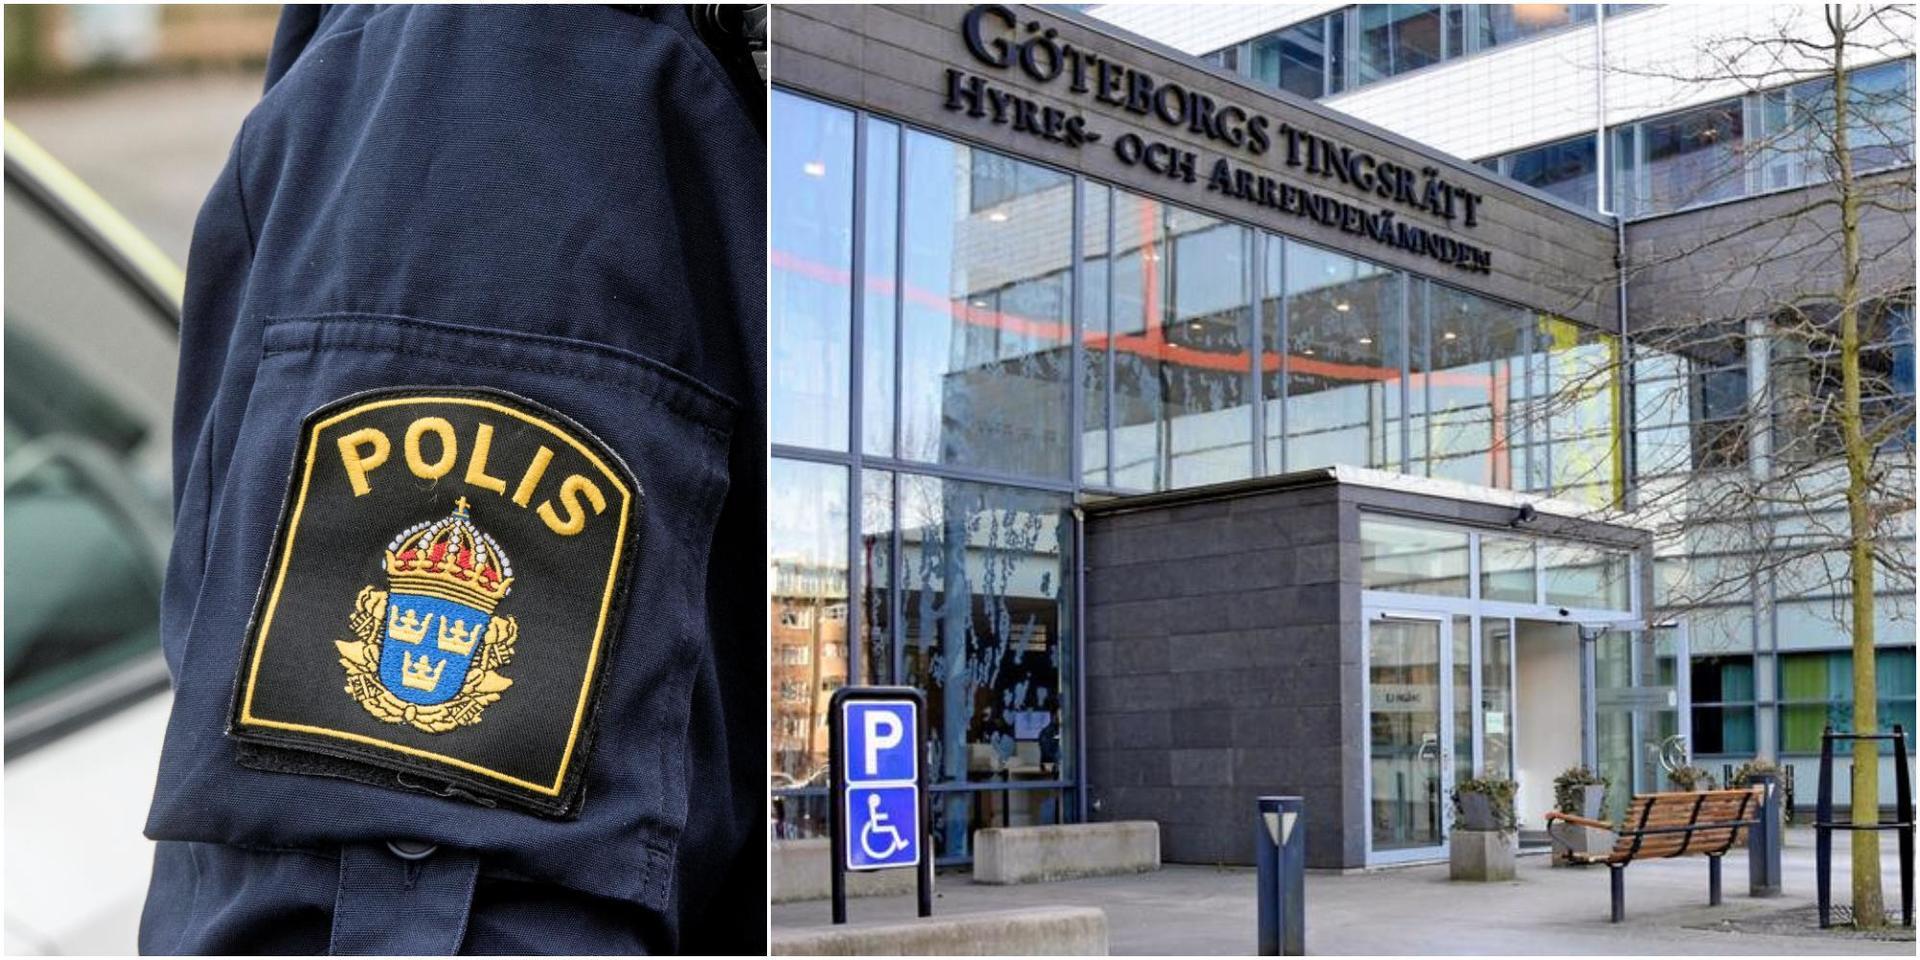 Polis och Göteborgs tingsrätt.